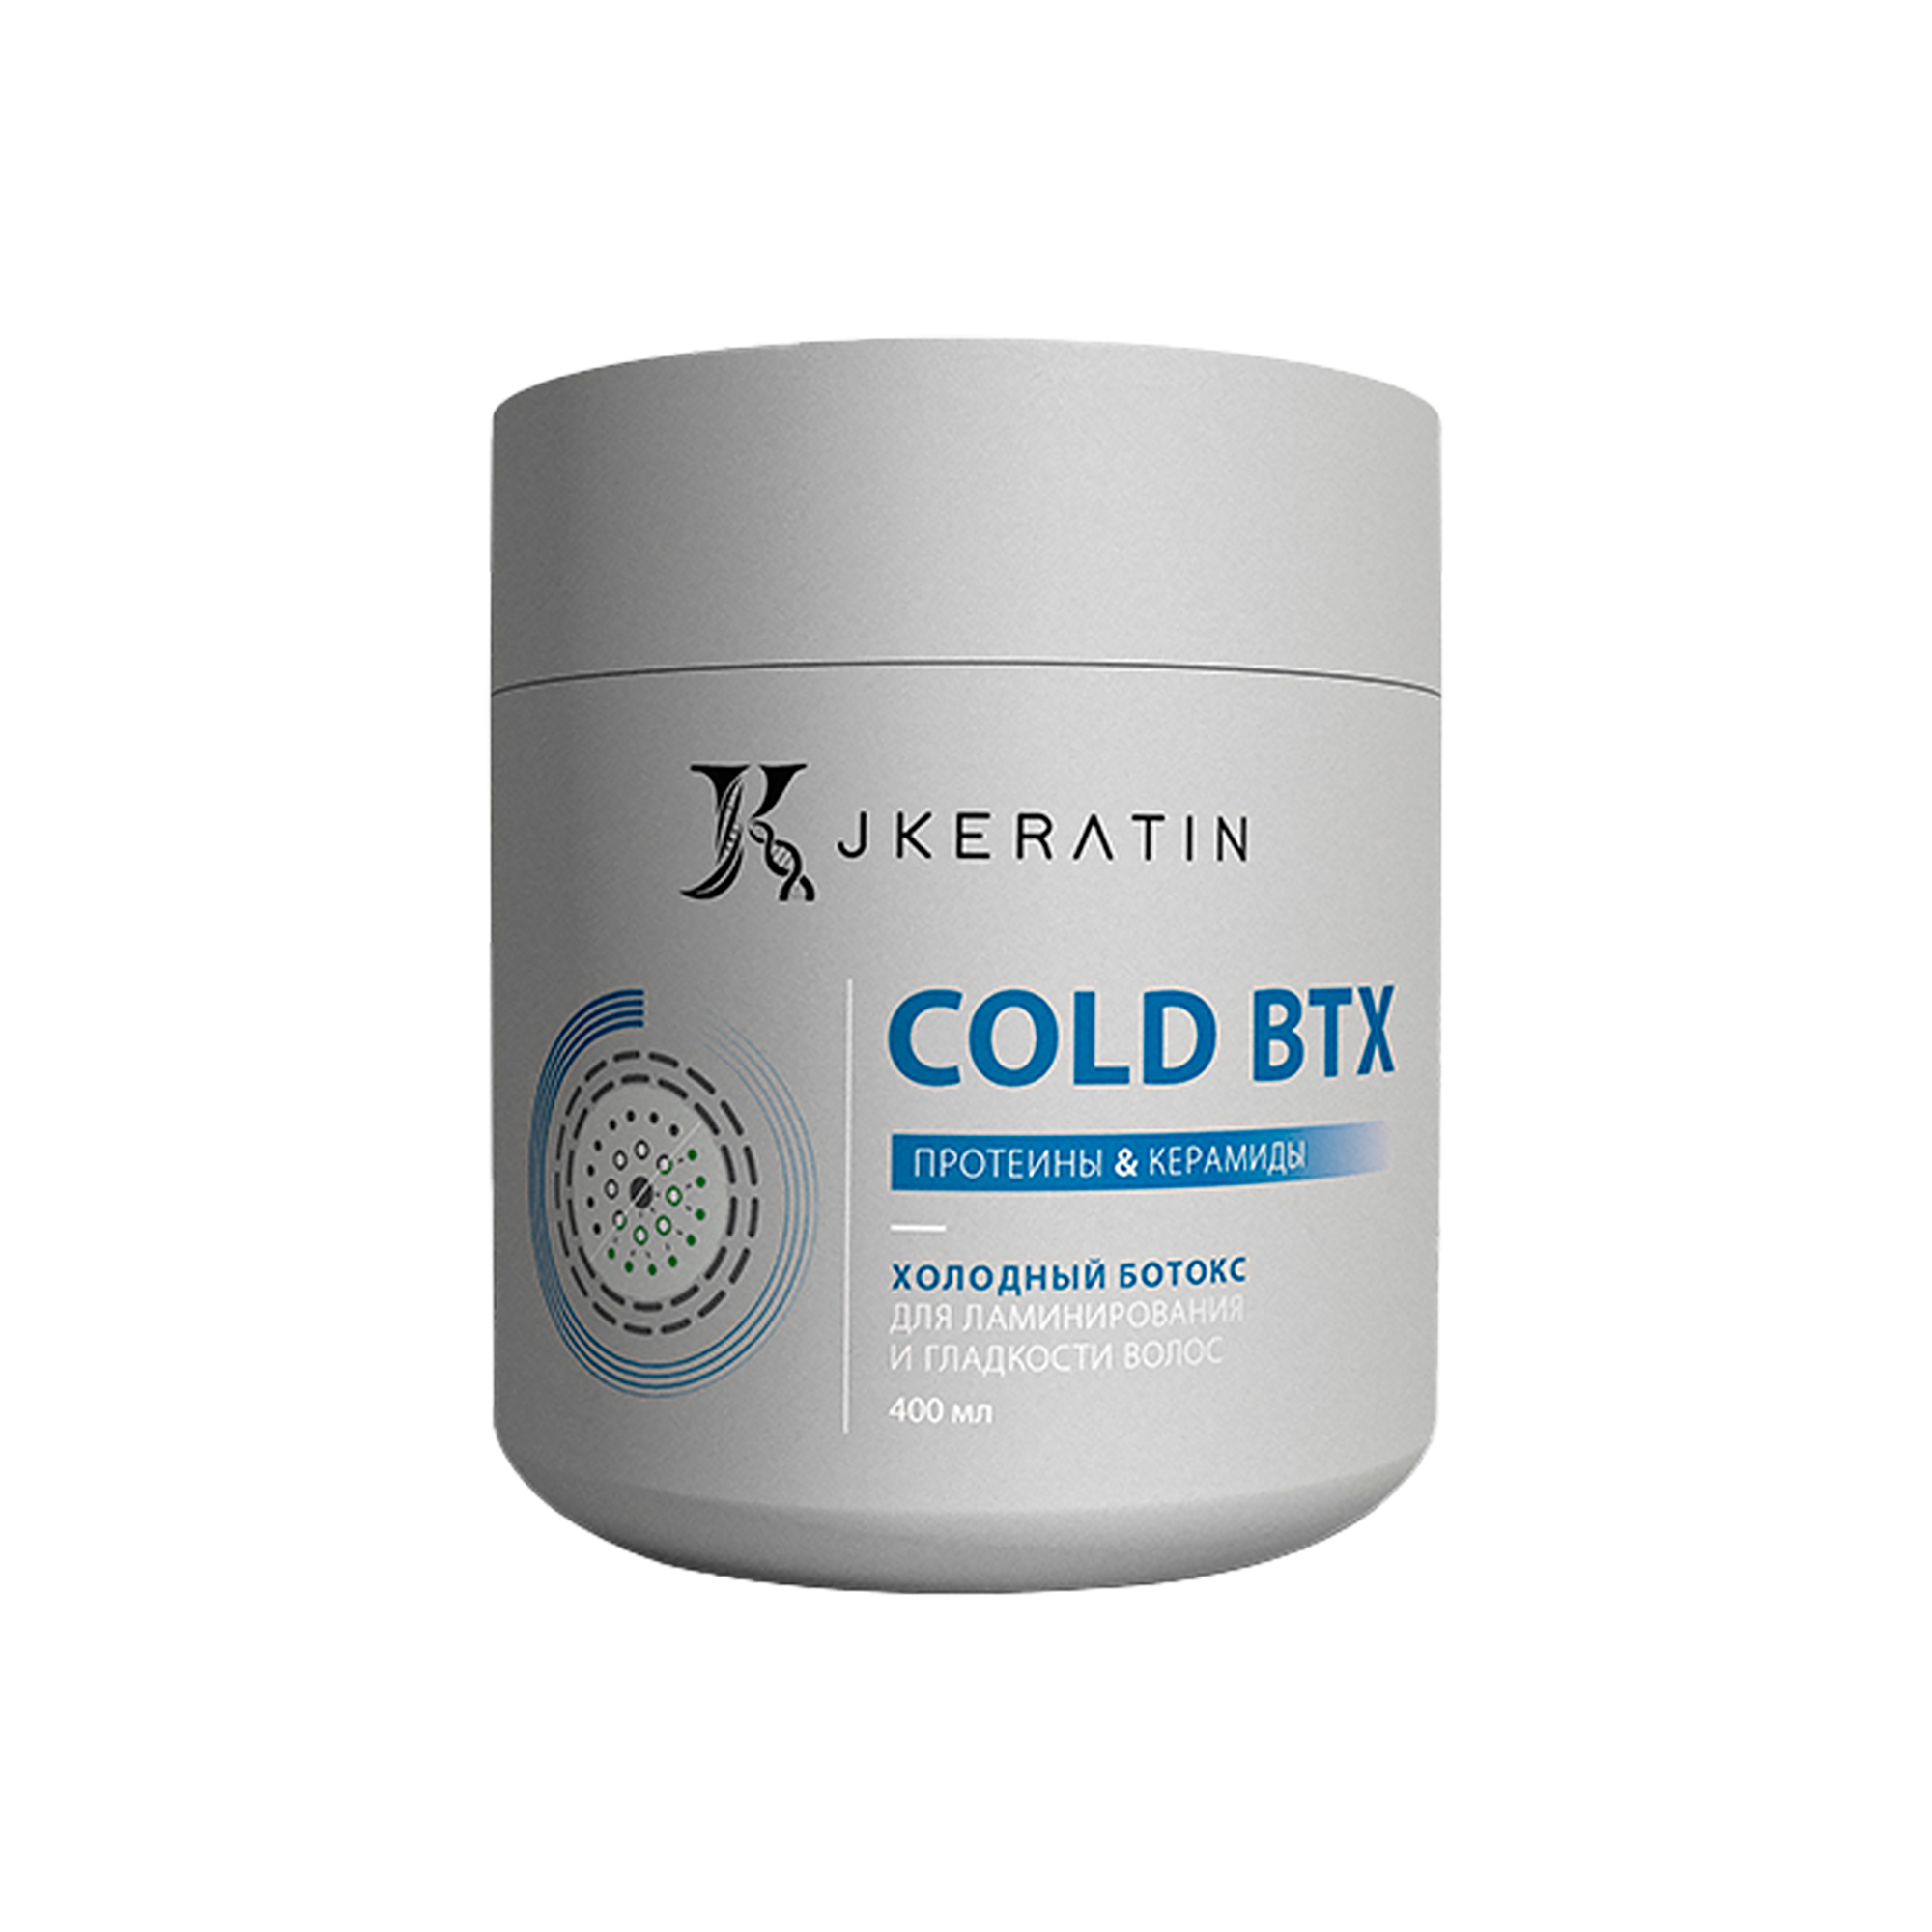 Холодный ботокс JKeratin Cold BTX для ламинирования и гладкости волос, 400 мл холодный разум одувалова а с